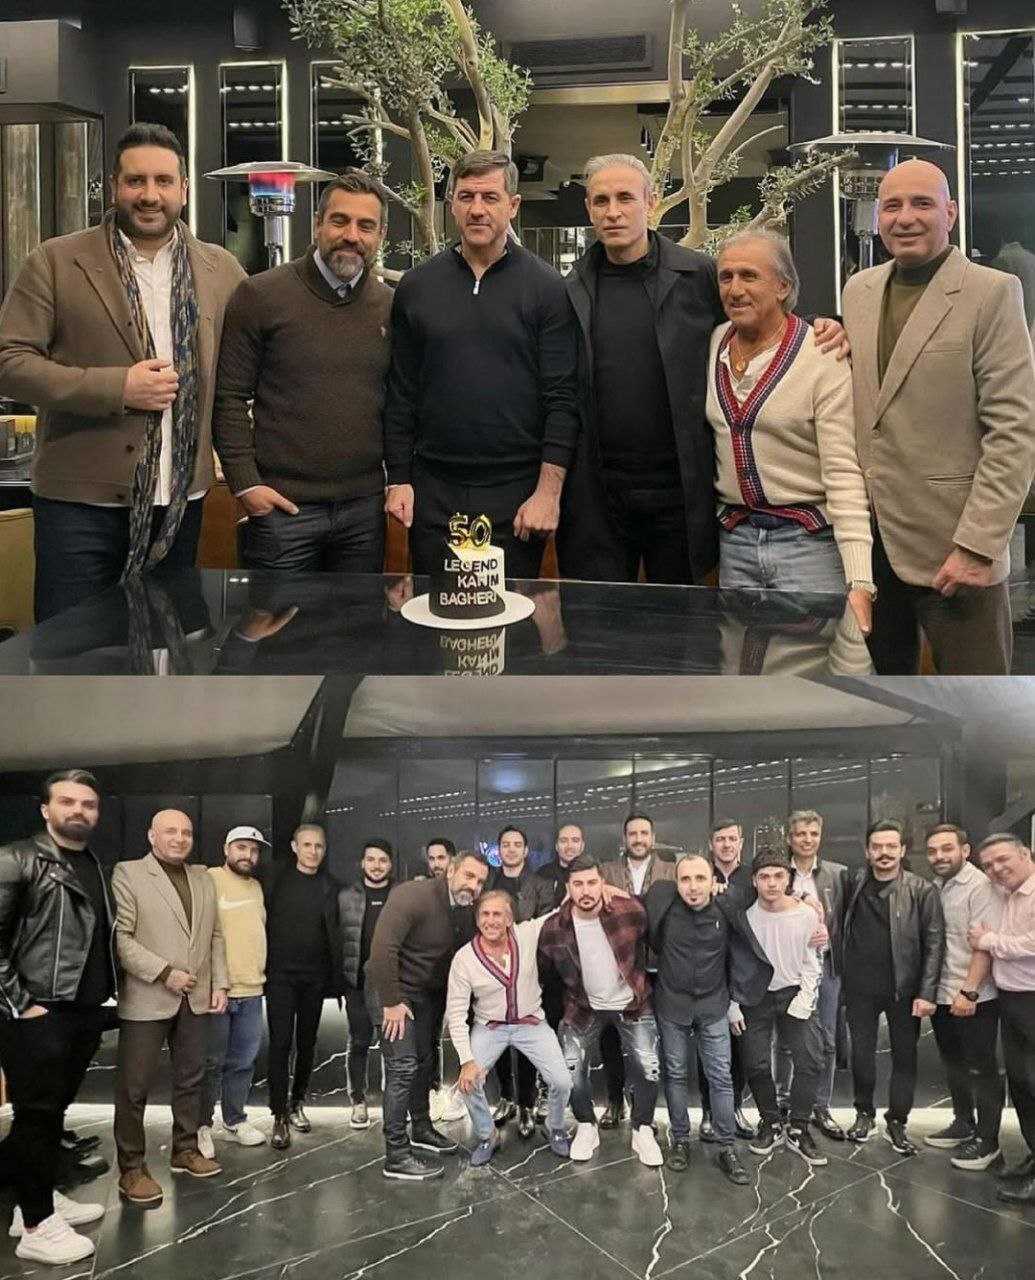 عکس/ کریم باقری با حضور بزرگان جشن تولد گرفت